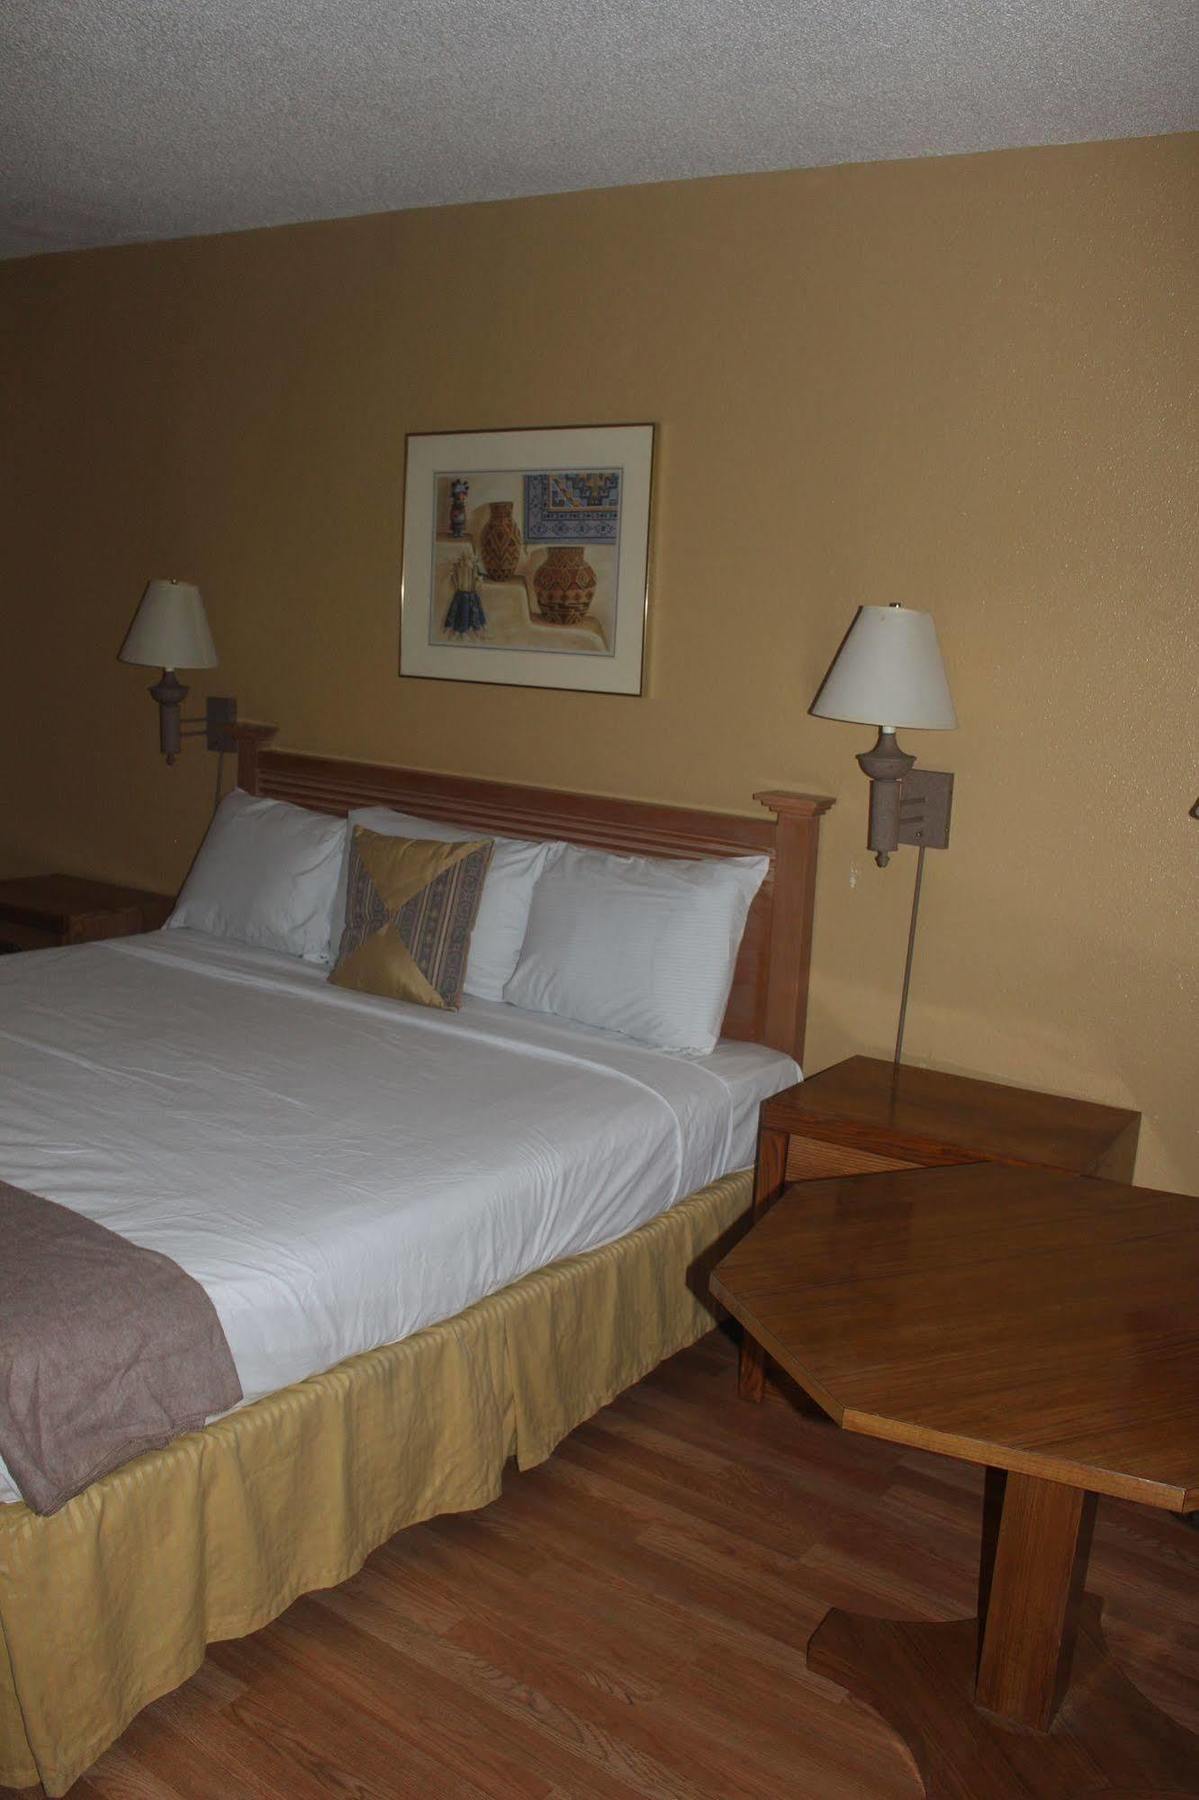 Fortuna Inn And Suites Tucson Exterior photo